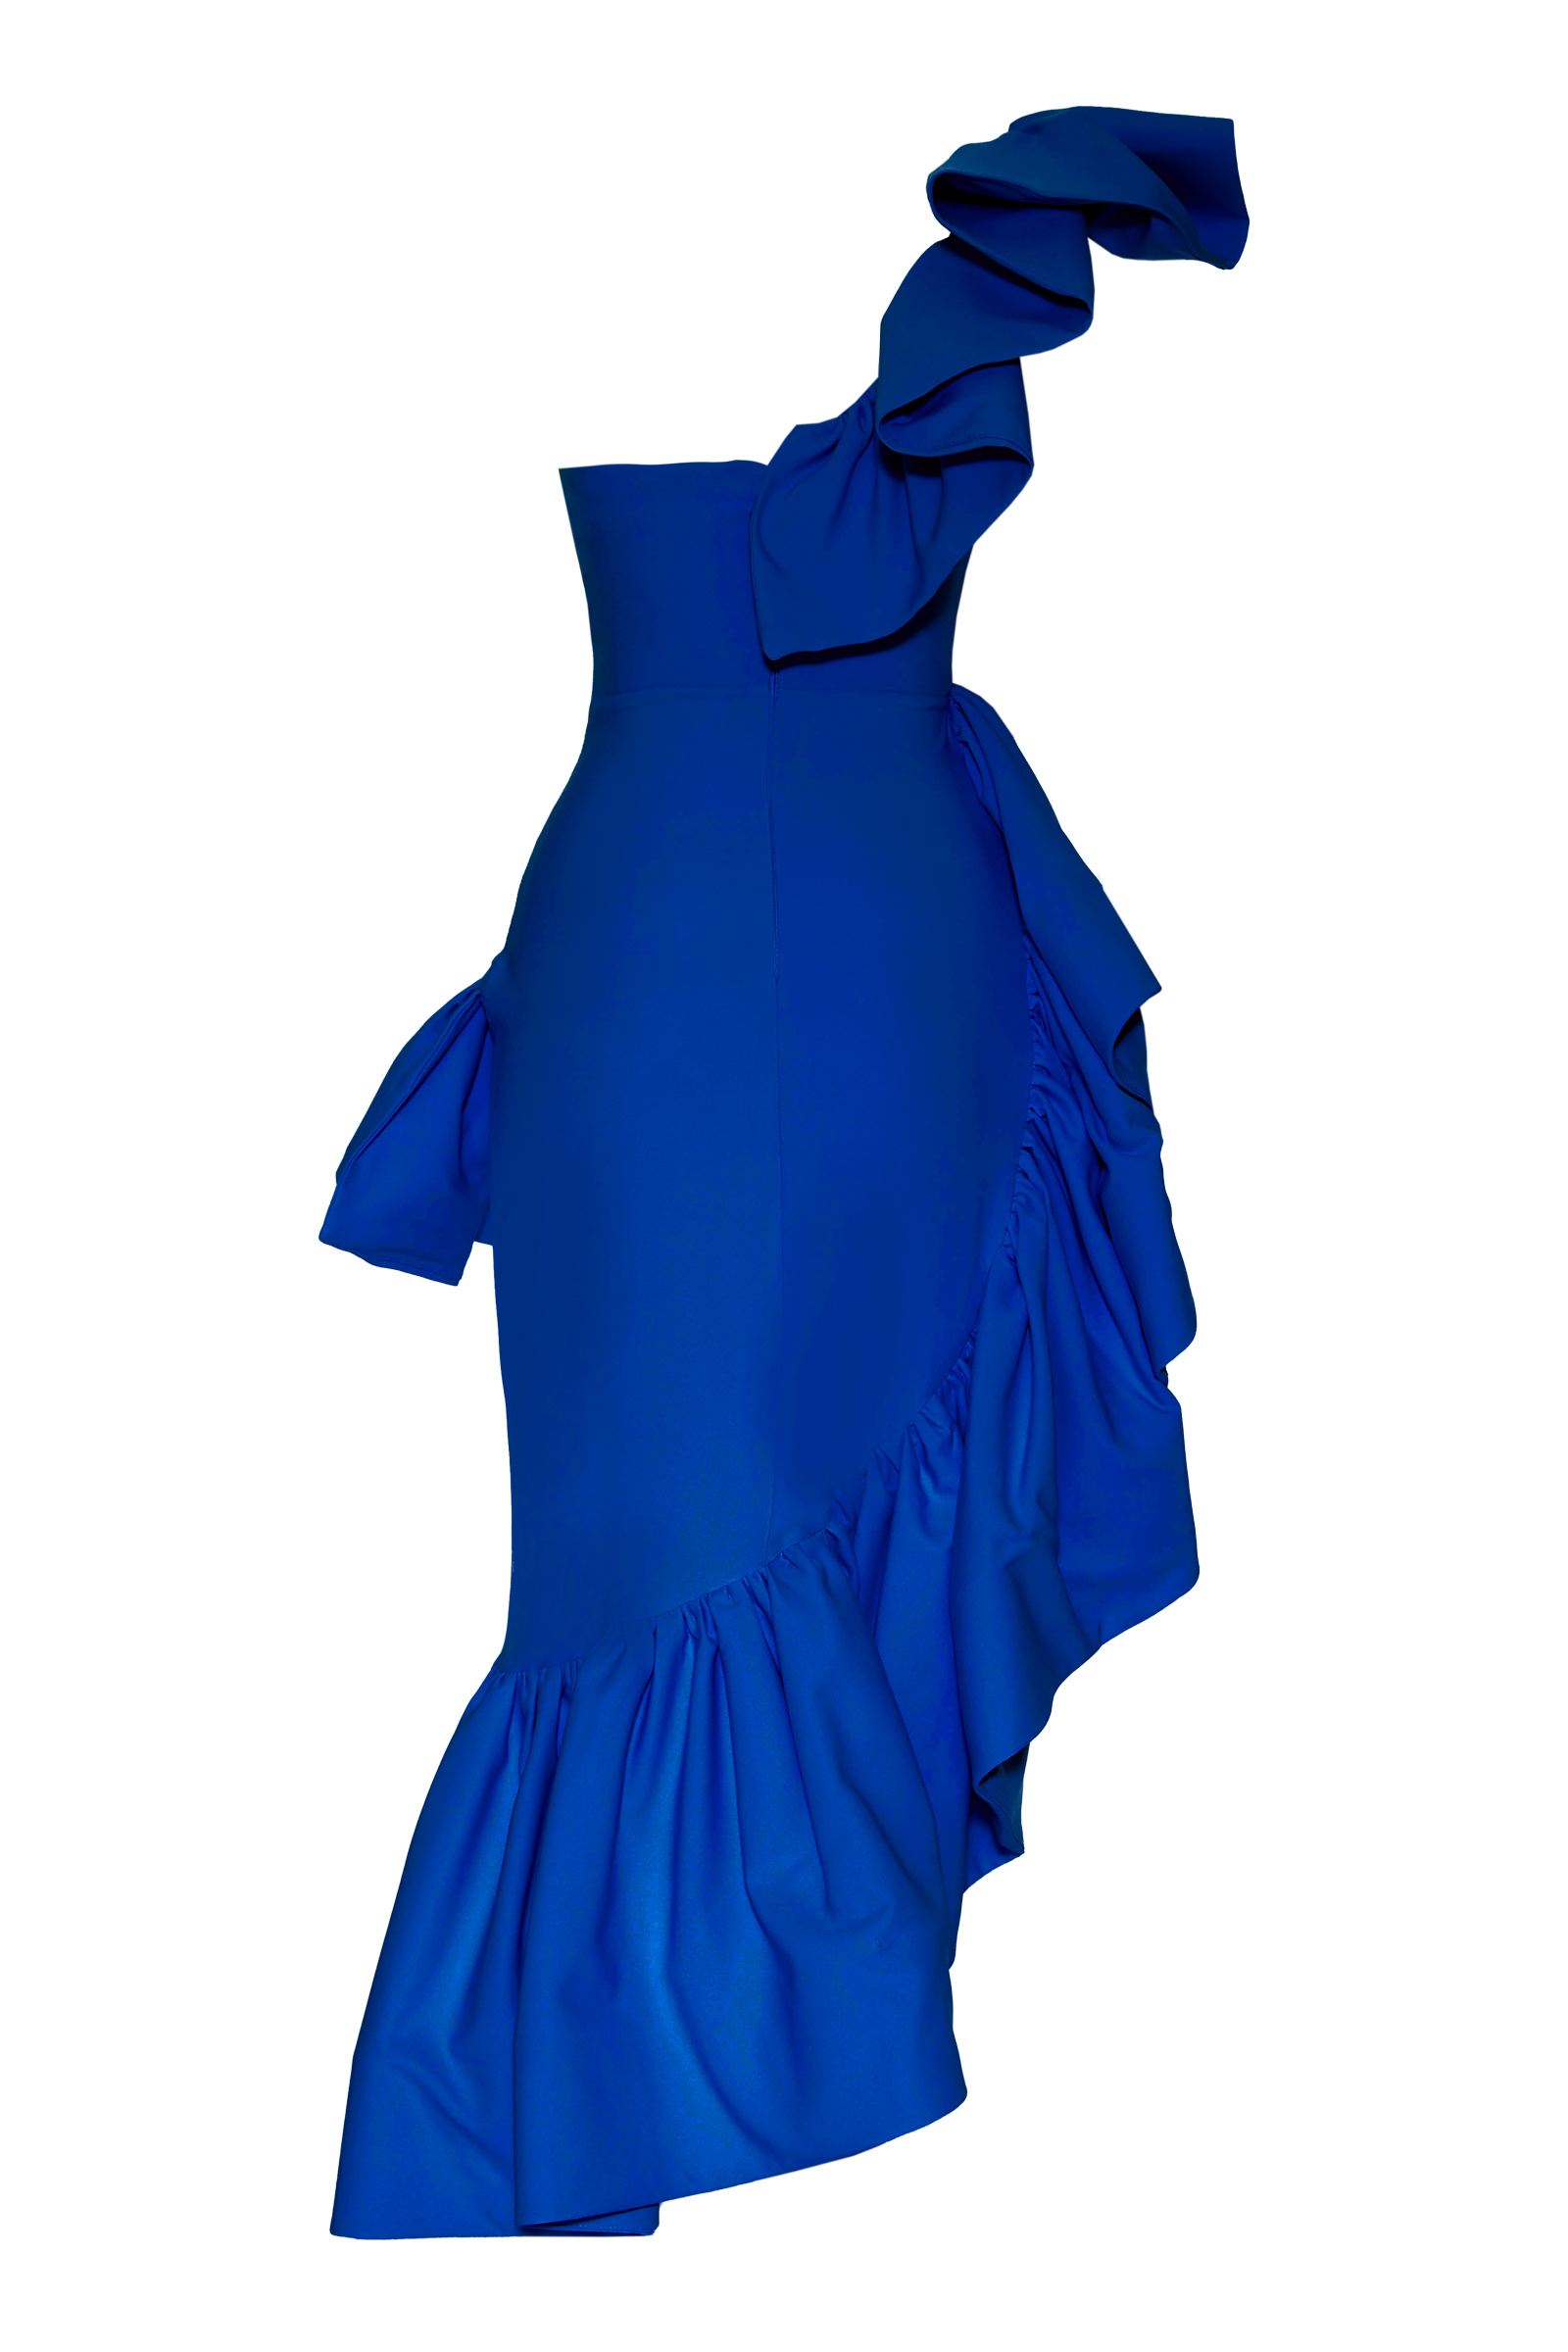 Saks mavisi krep kolsuz uzun elbise